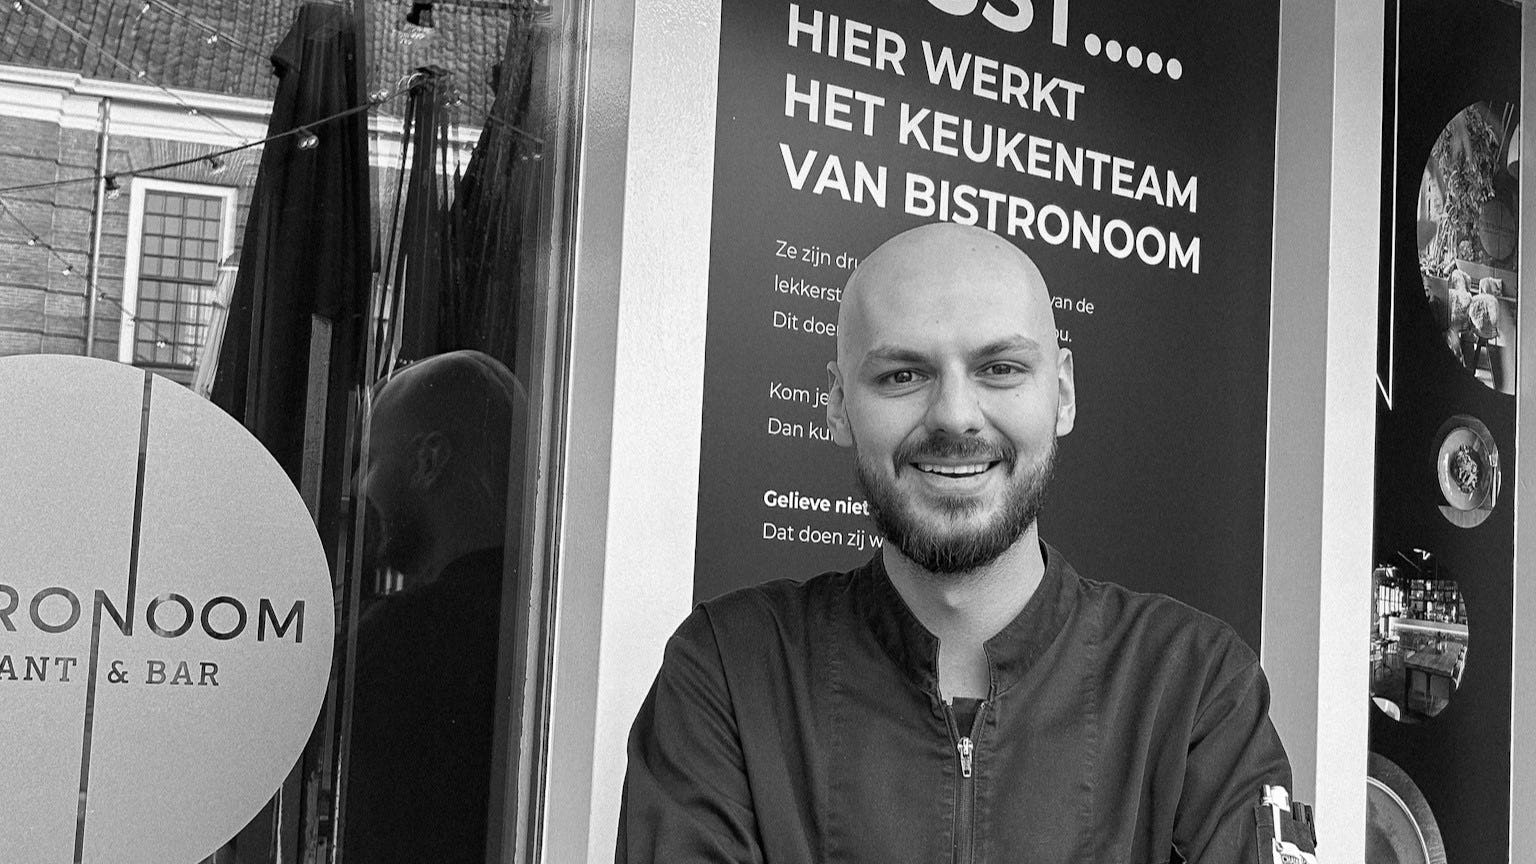 Bistronoom benoemt Tyas Verburg als nieuwe chef-kok: 'Verrassen met smaakvolle ervaringen'